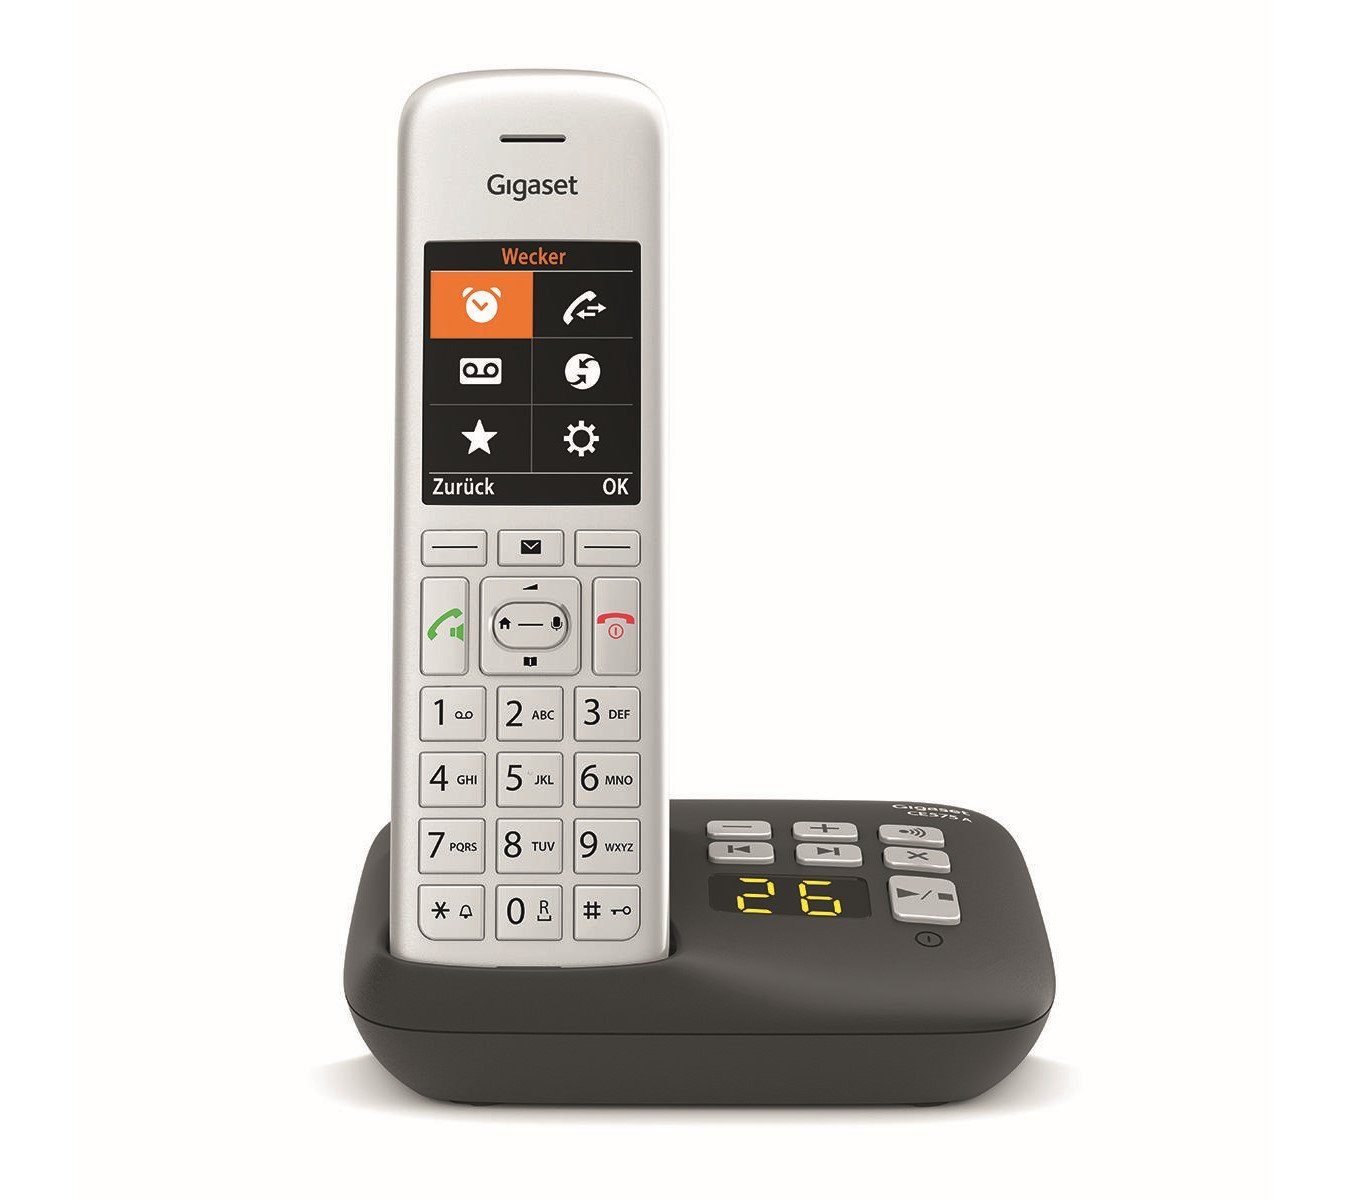 Großwahltasten, Festnetztelefon CE 1, Freisprechen, 575A Gigaset Anrufersperre) (Mobilteile: